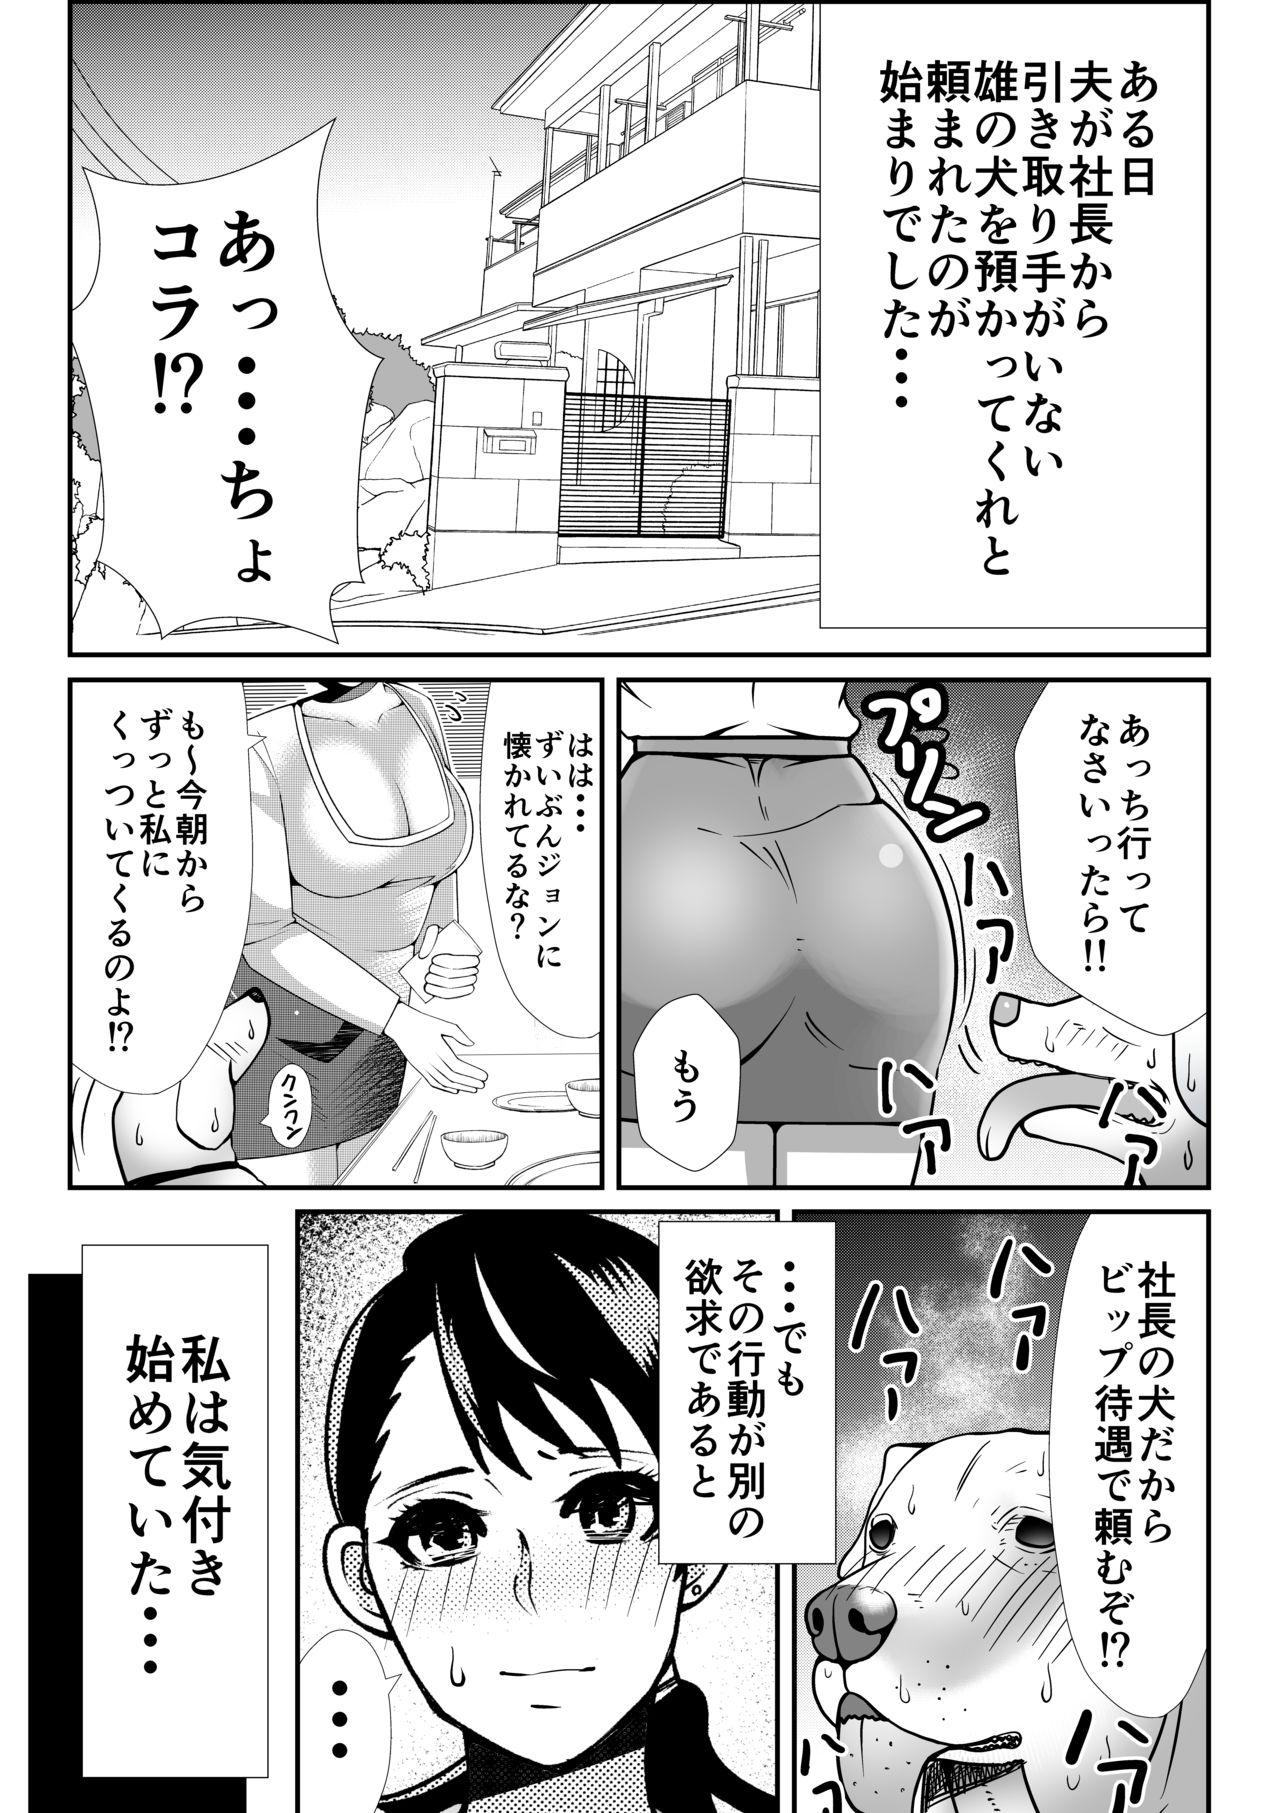 Funk 獣姦漫画3ページ - Oshiete galko-chan Pussy Fucking - Page 2